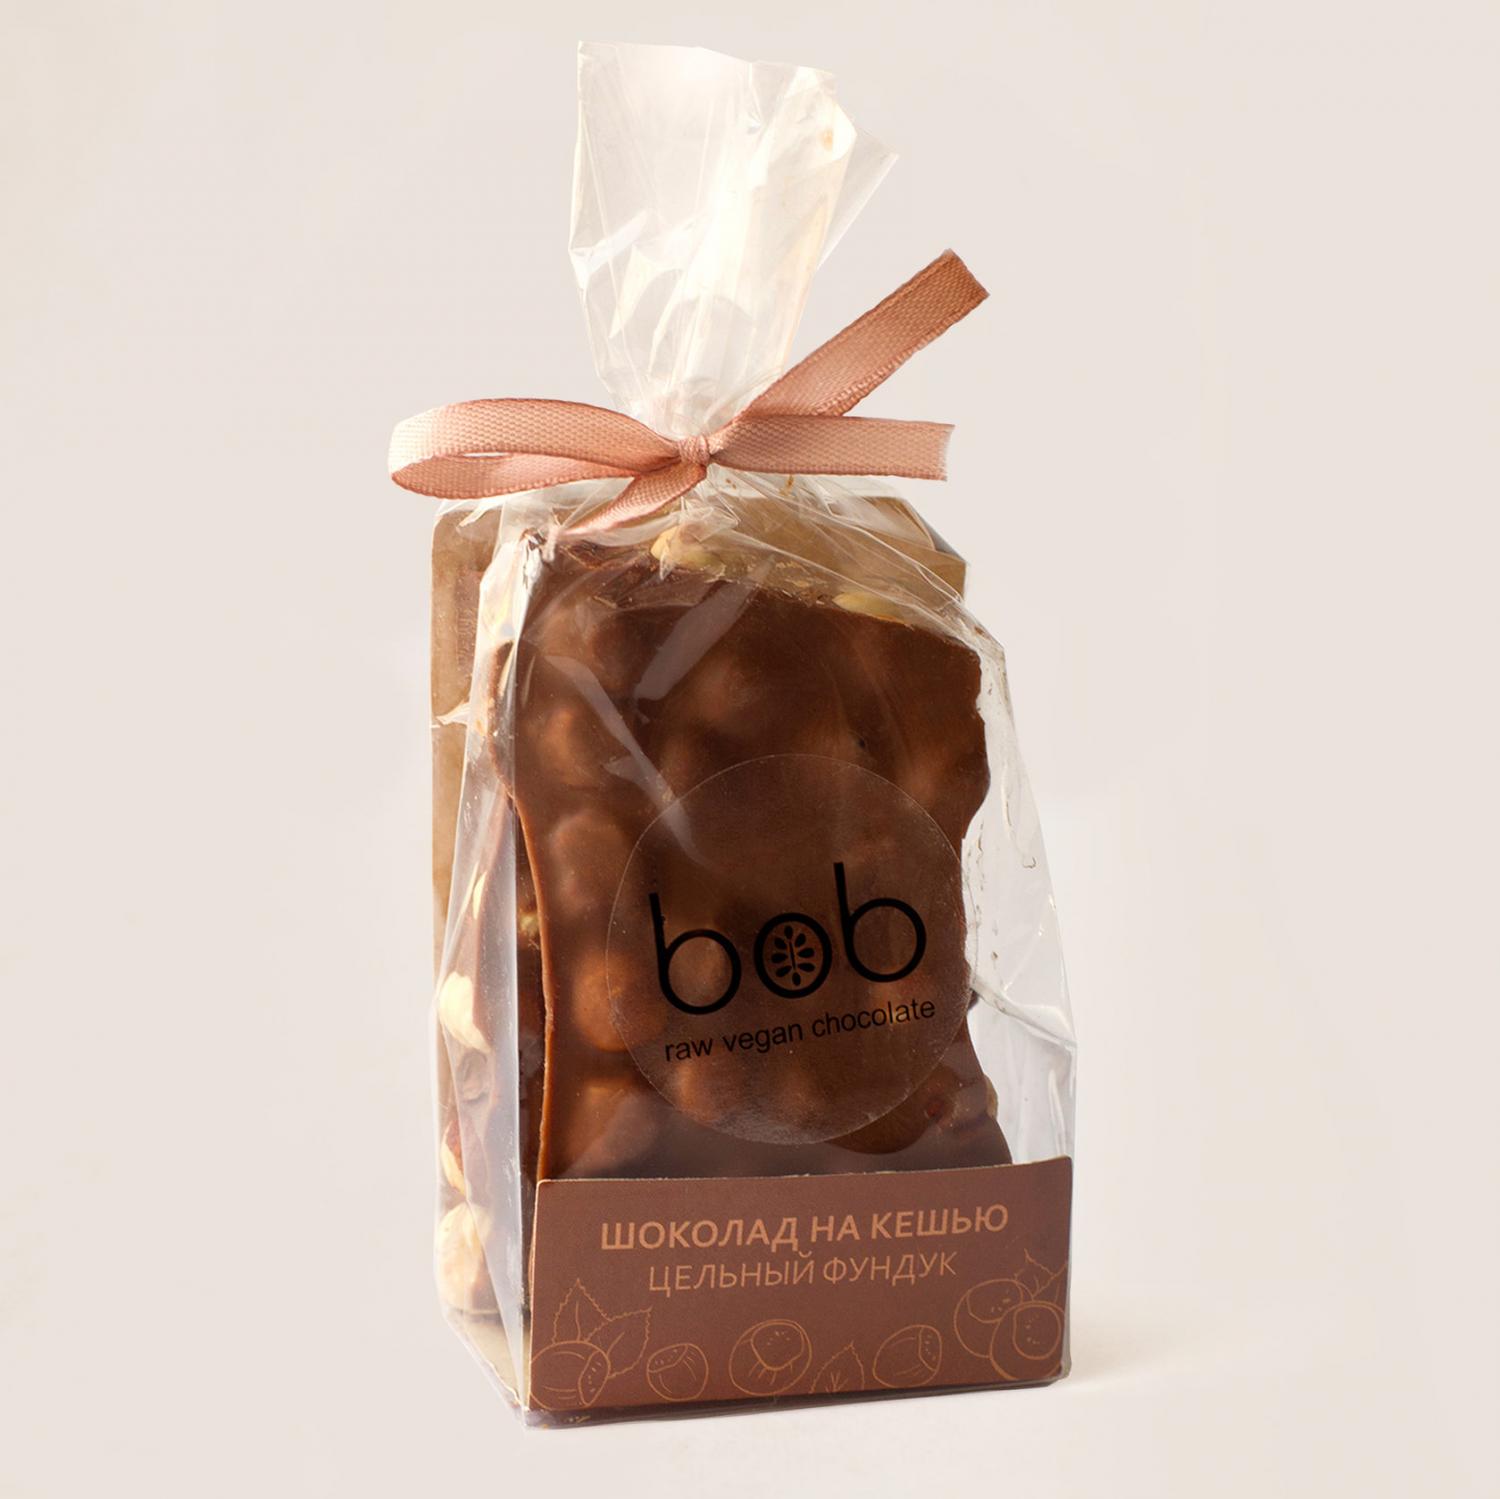 Шоколад на кешью с цельным фундуком "BOB", 100 гр